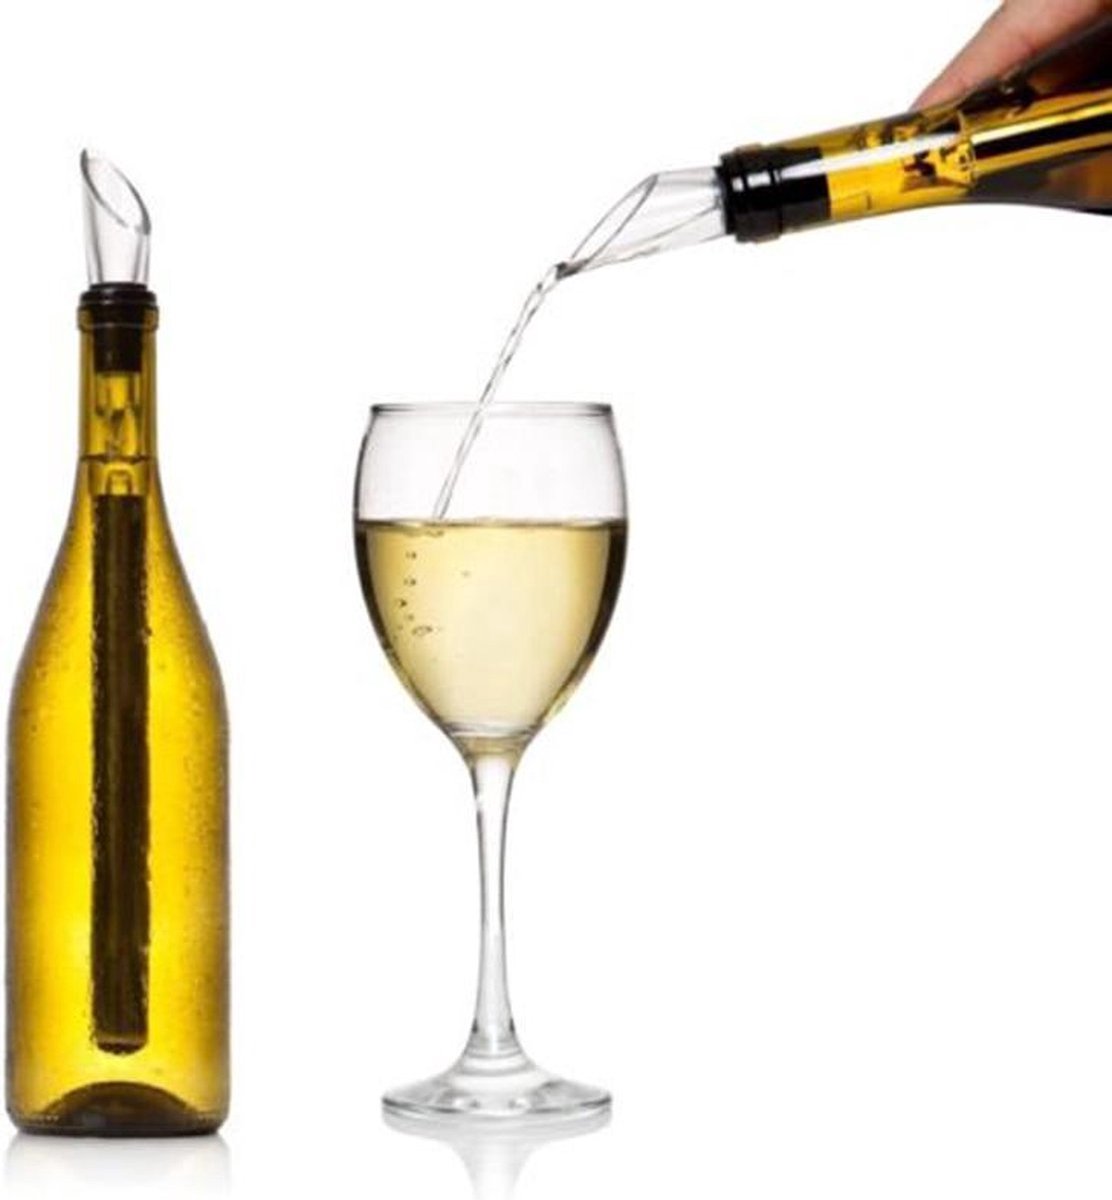 Luxe Wijnkoeler Stick - Wijn Koeler Staaf - Wijn Fles Koeler - Wijnschenker - Wijnstopper - Wine Chiller - Champagne Koeler - Koelstaaf voor wijn